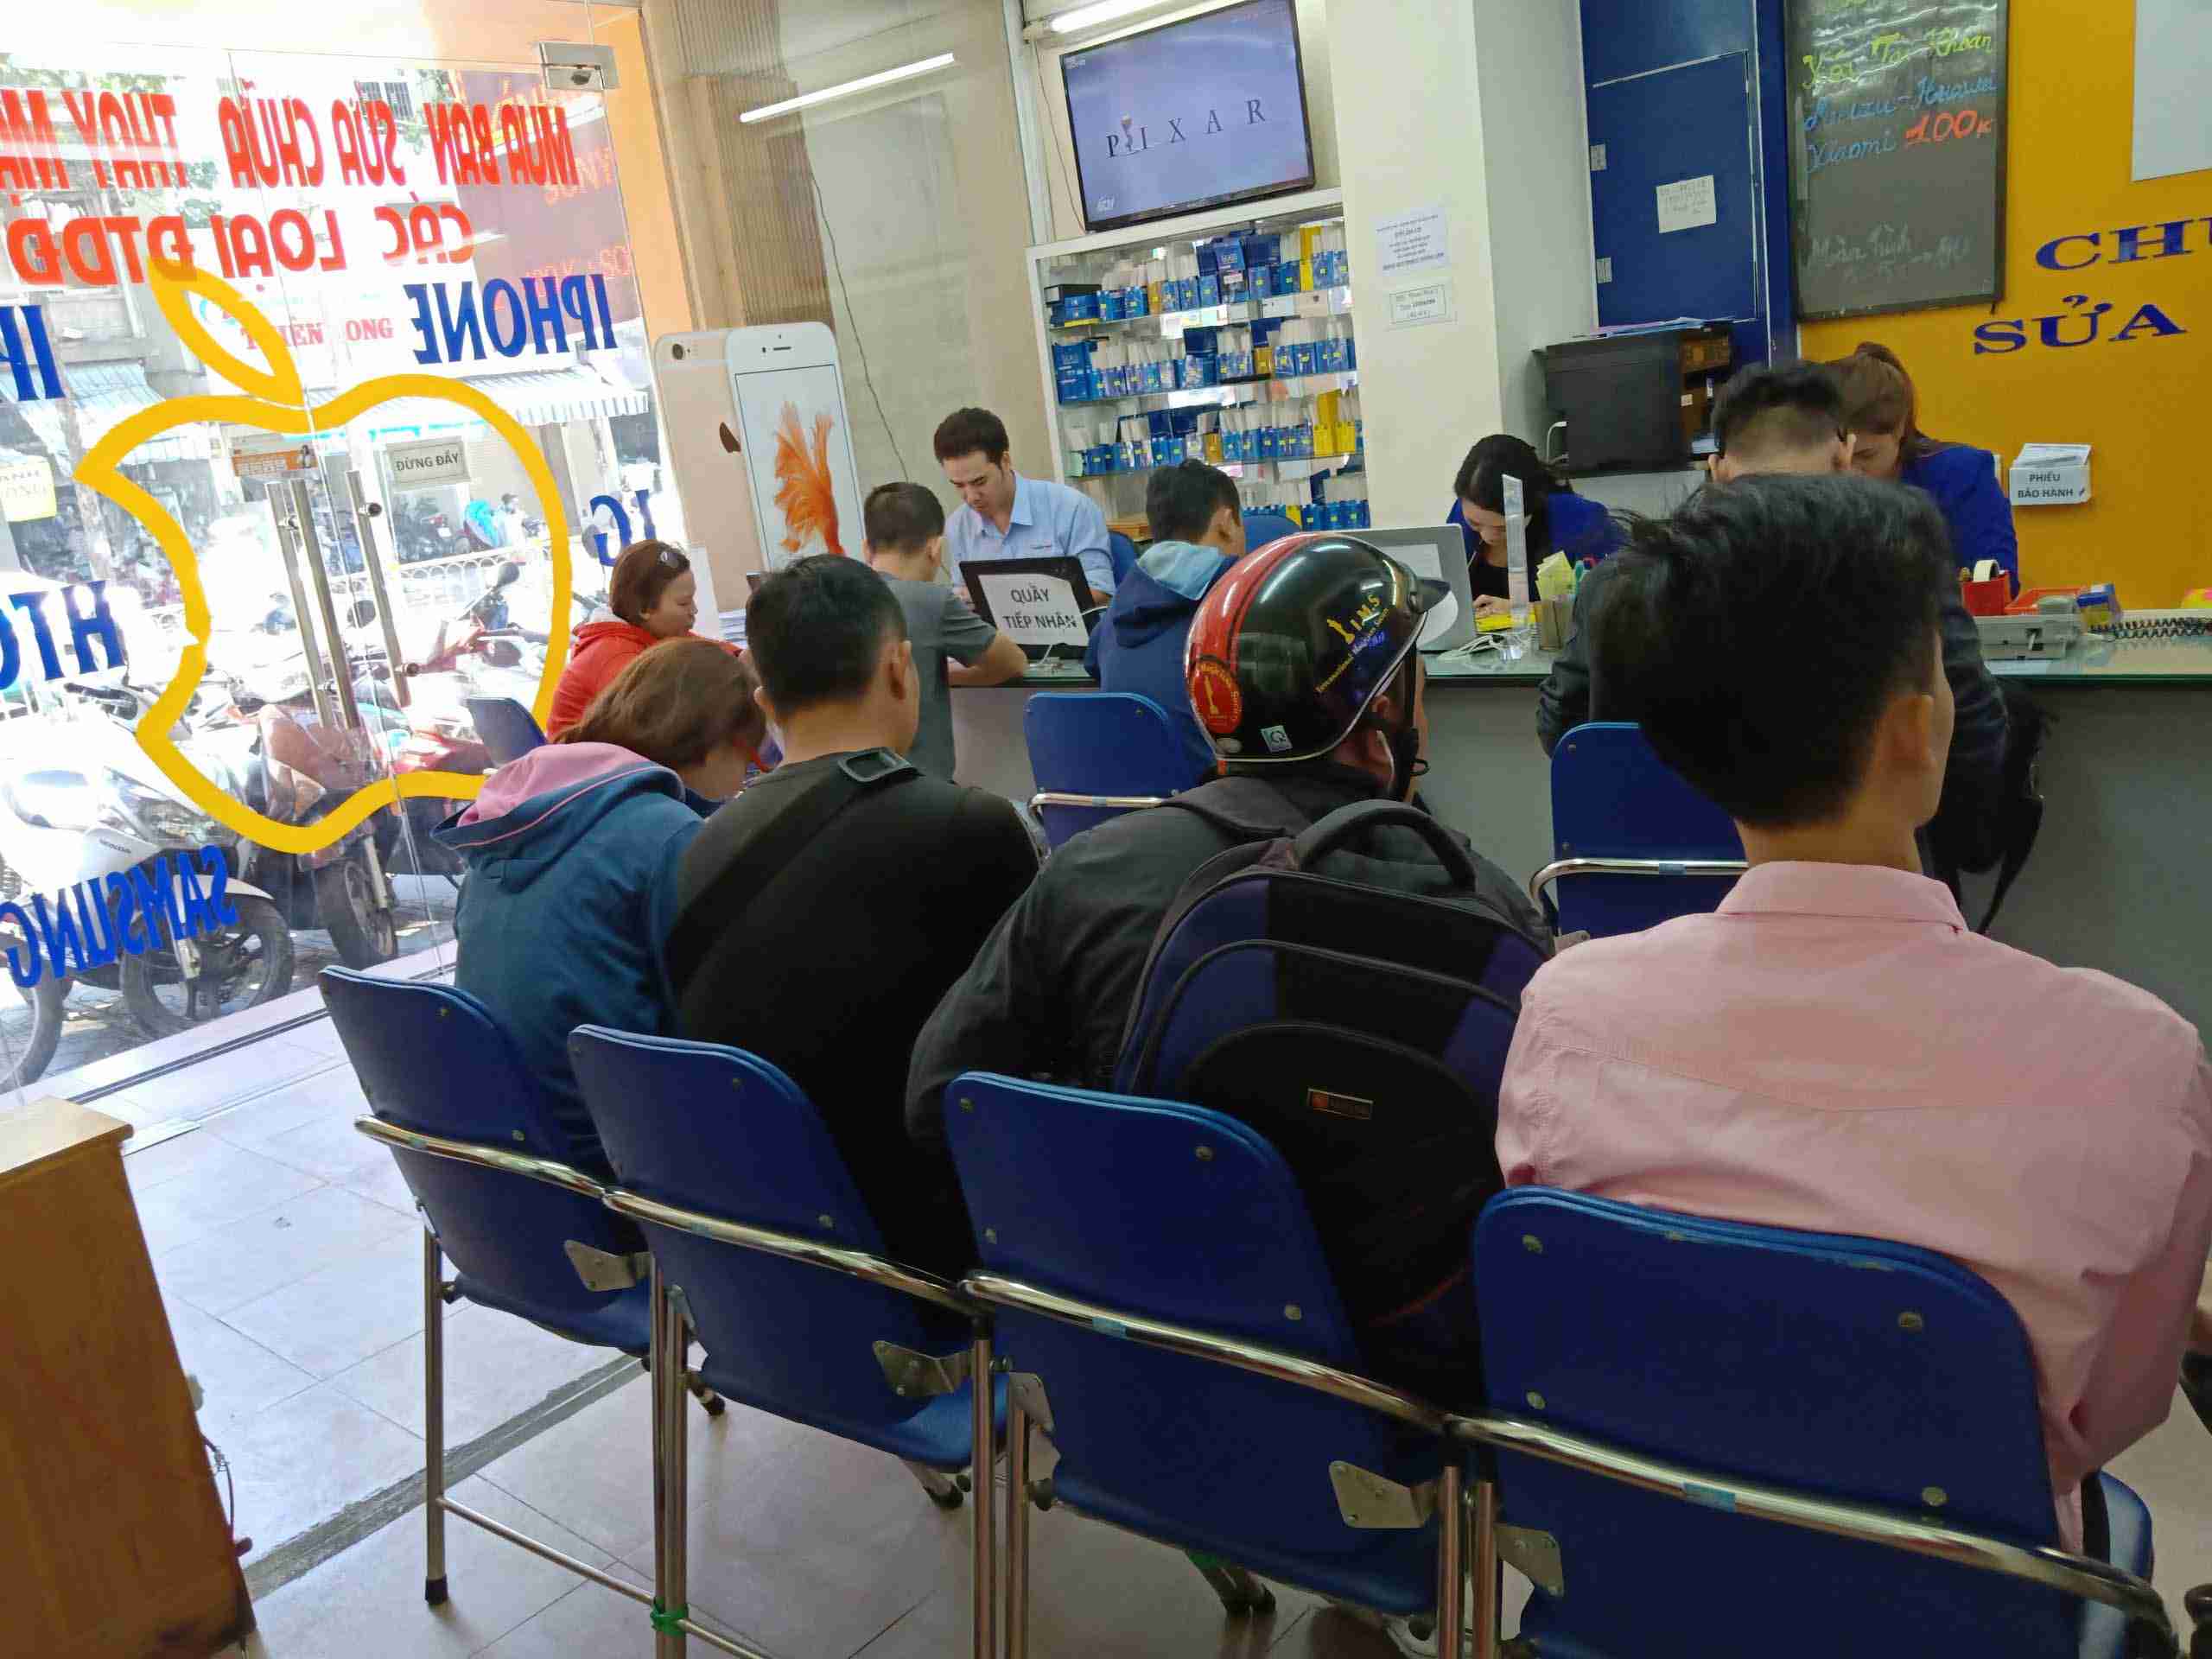 Khách hàng thay mặt kính tại Thuận Phát Mobile